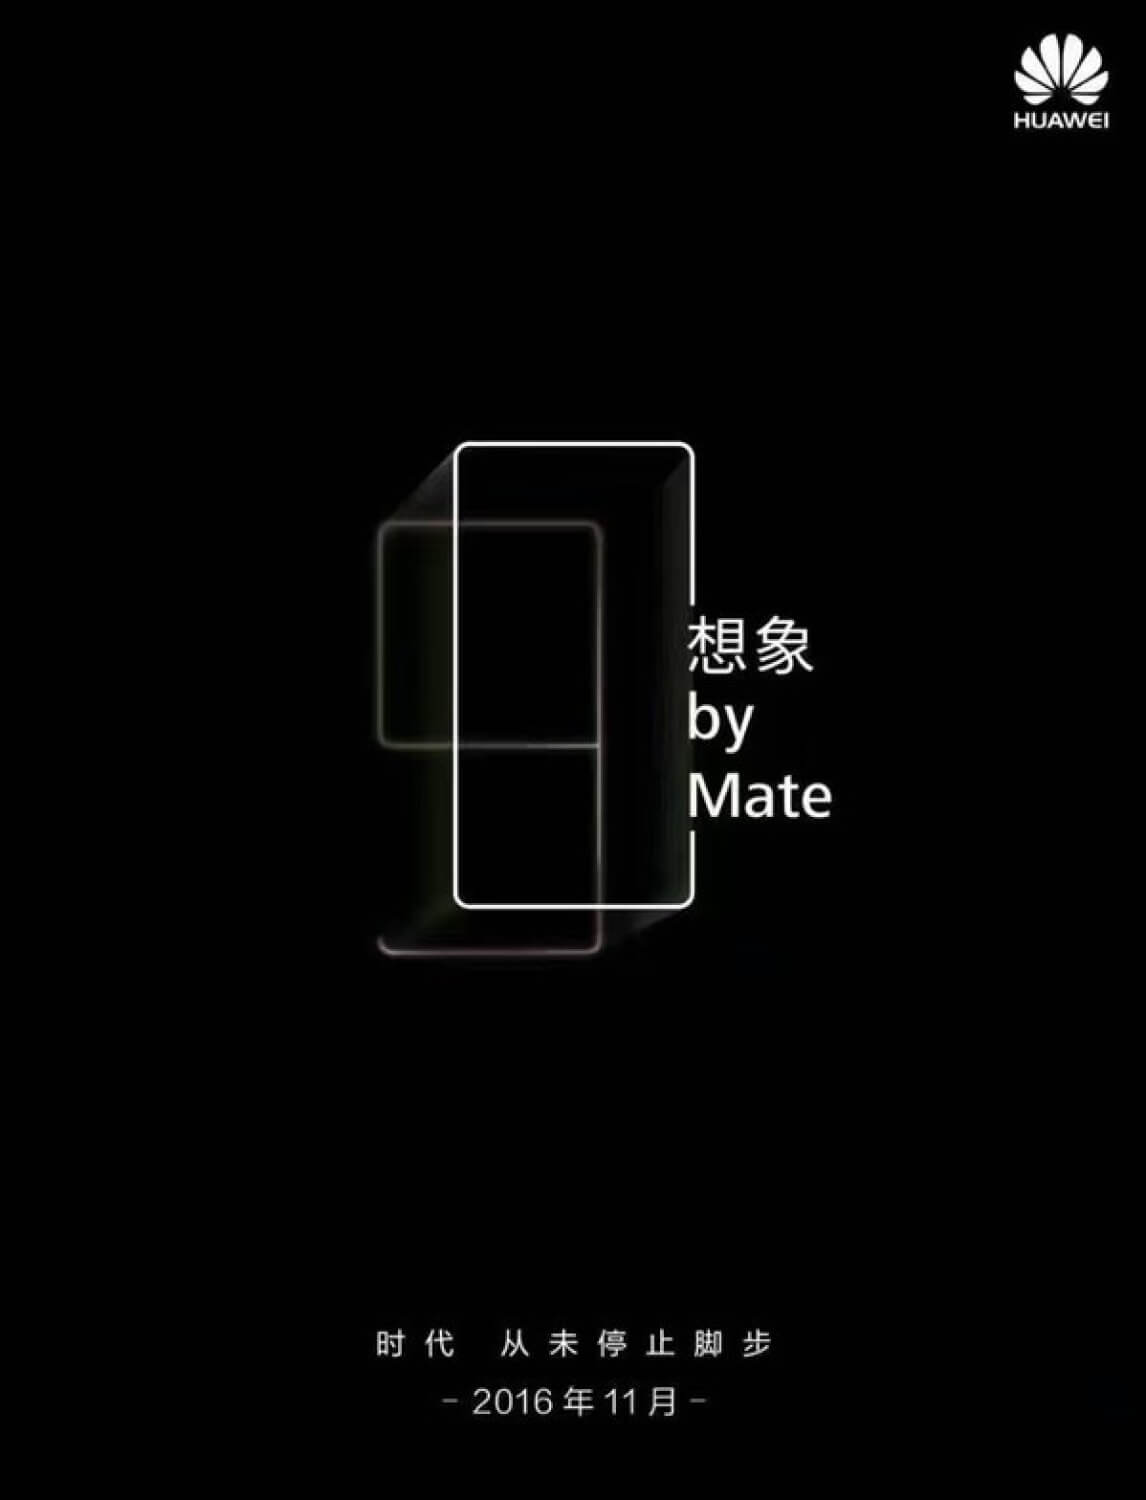 Официальный тизер презентации смартфона Huawei 3 ноября